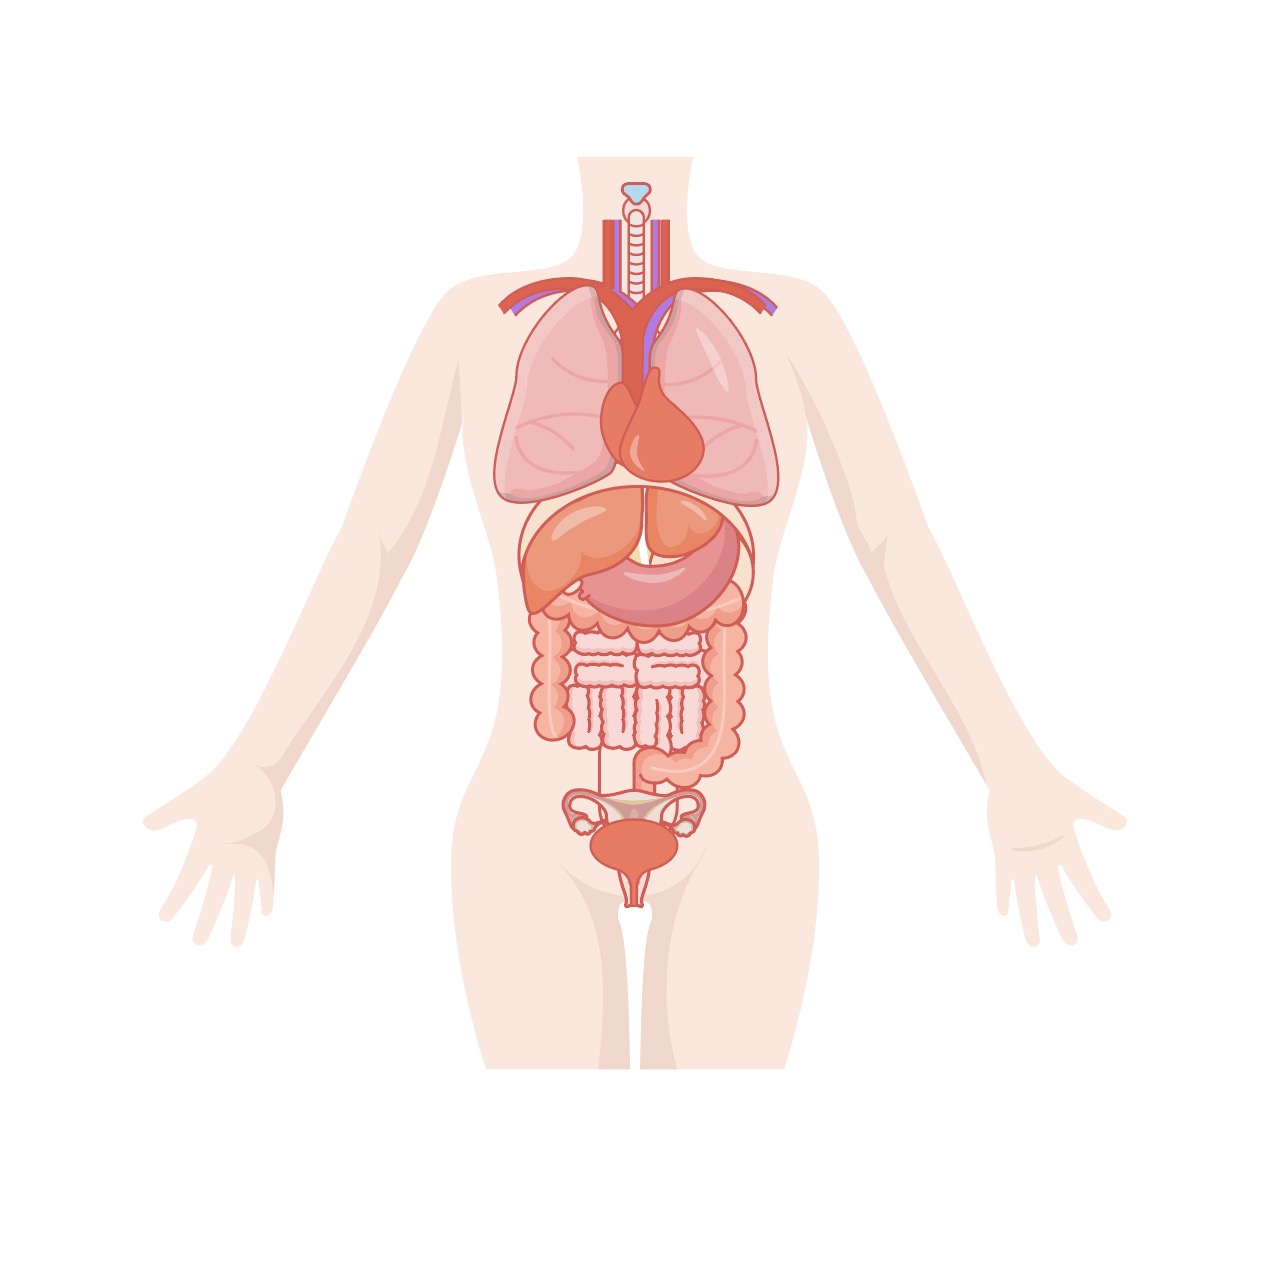 인체 장기 일러스트 Ai 다운로드 Download Human Body Organs Vector - Urbanbrush